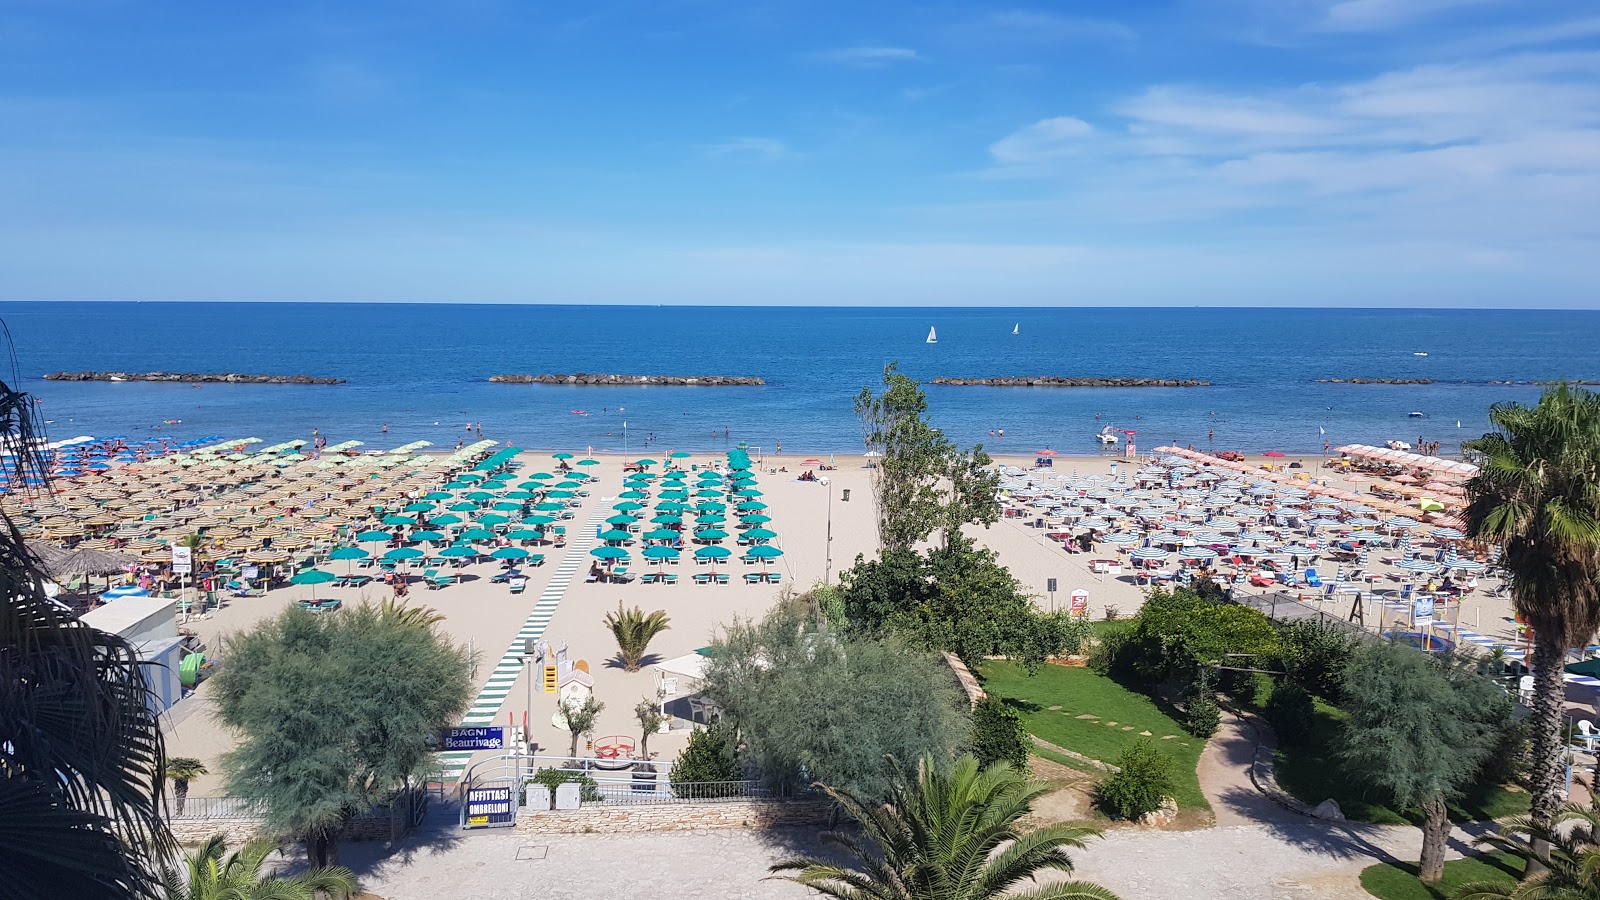 Spiaggia Campo Europa'in fotoğrafı çok temiz temizlik seviyesi ile